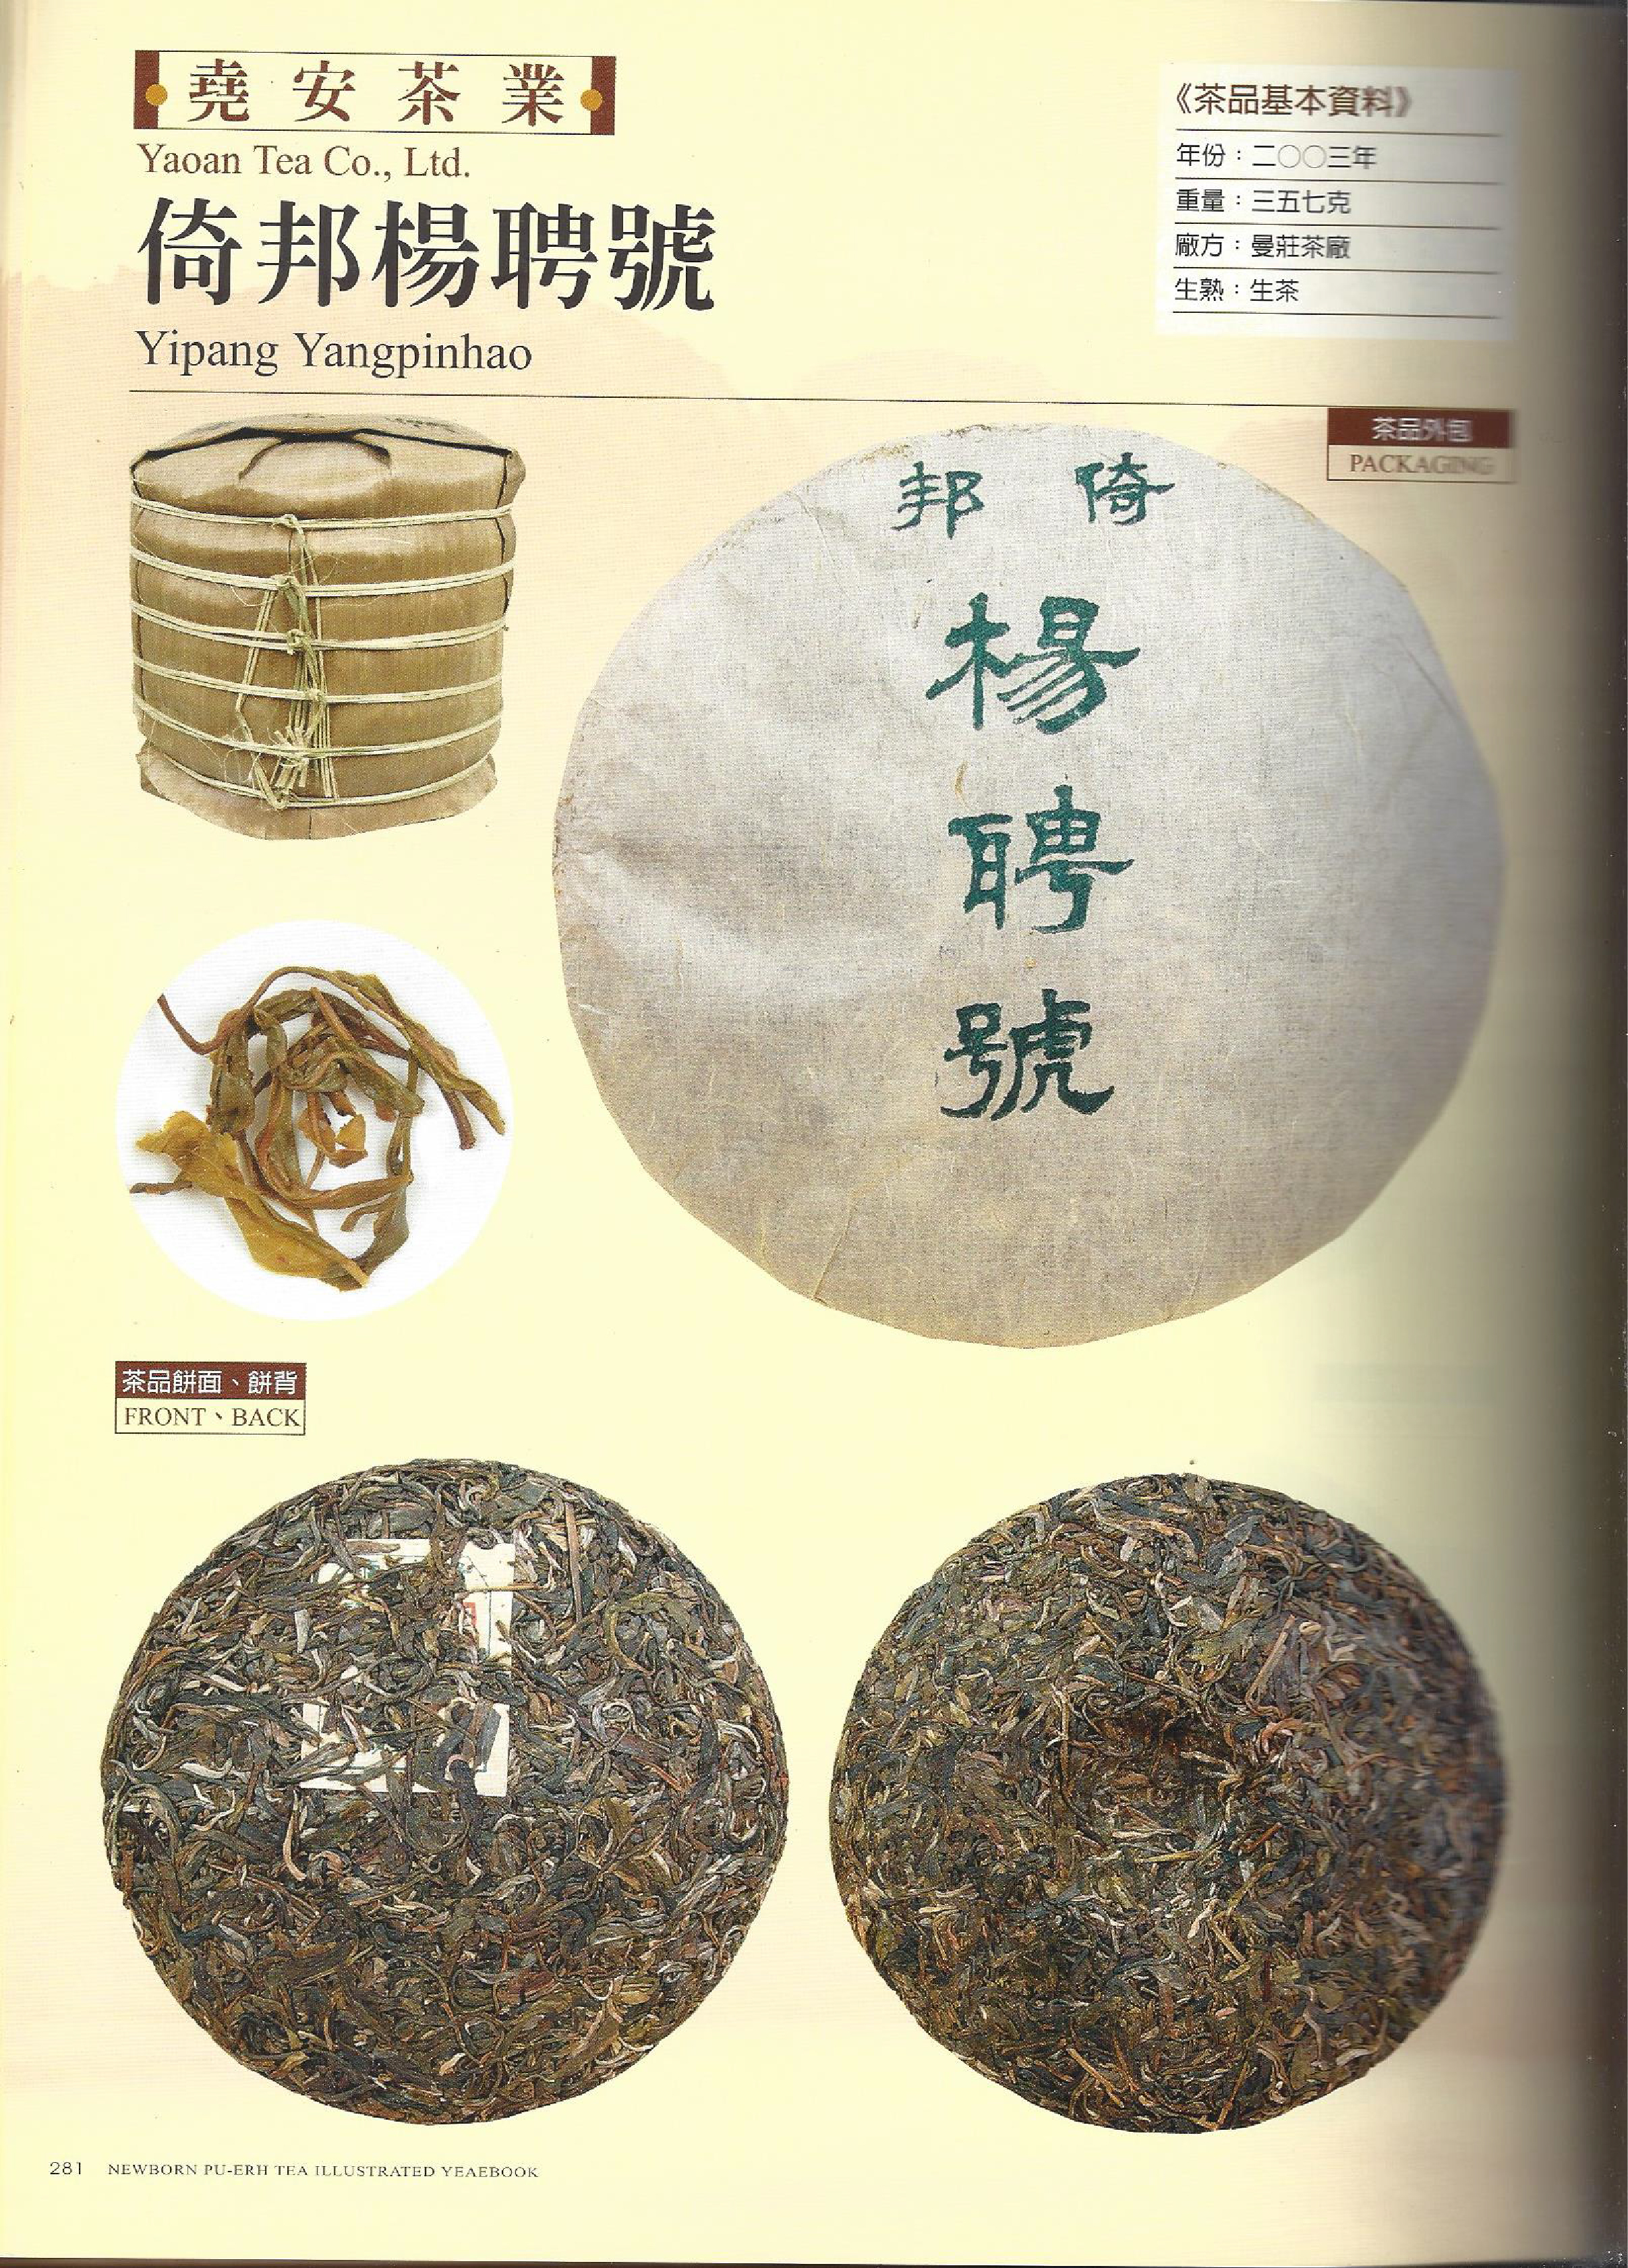 2004 Yang Pin Hao yiwu tea